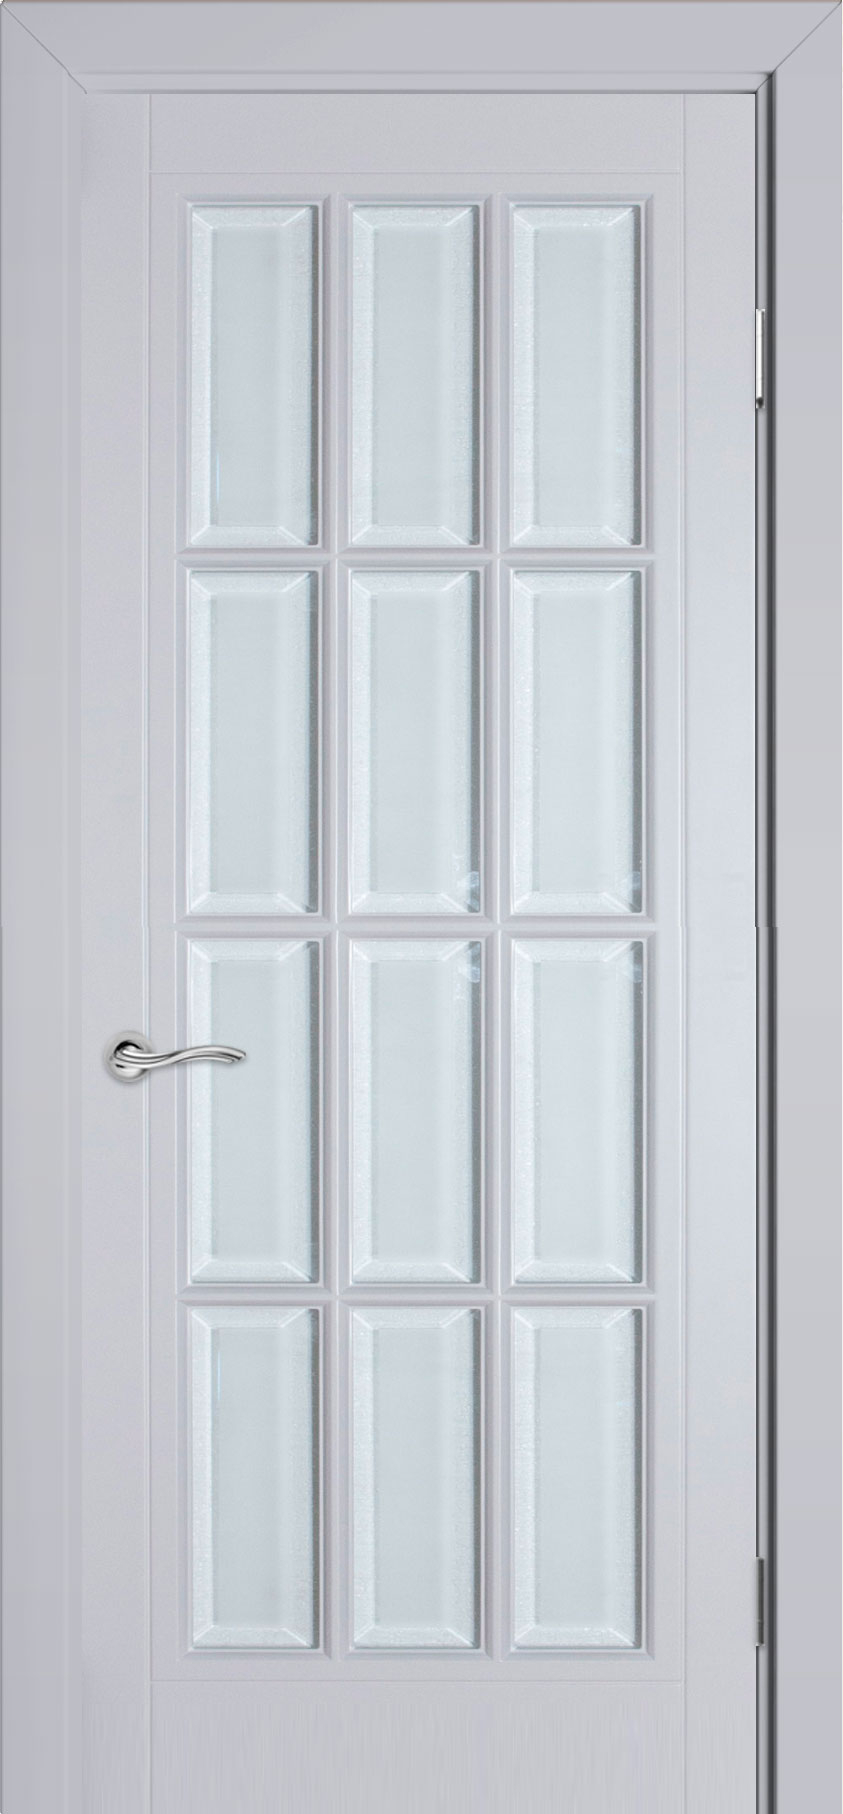 межкомнатные двери  Прованс Порта с вкладной решёткой ДО12 эмаль